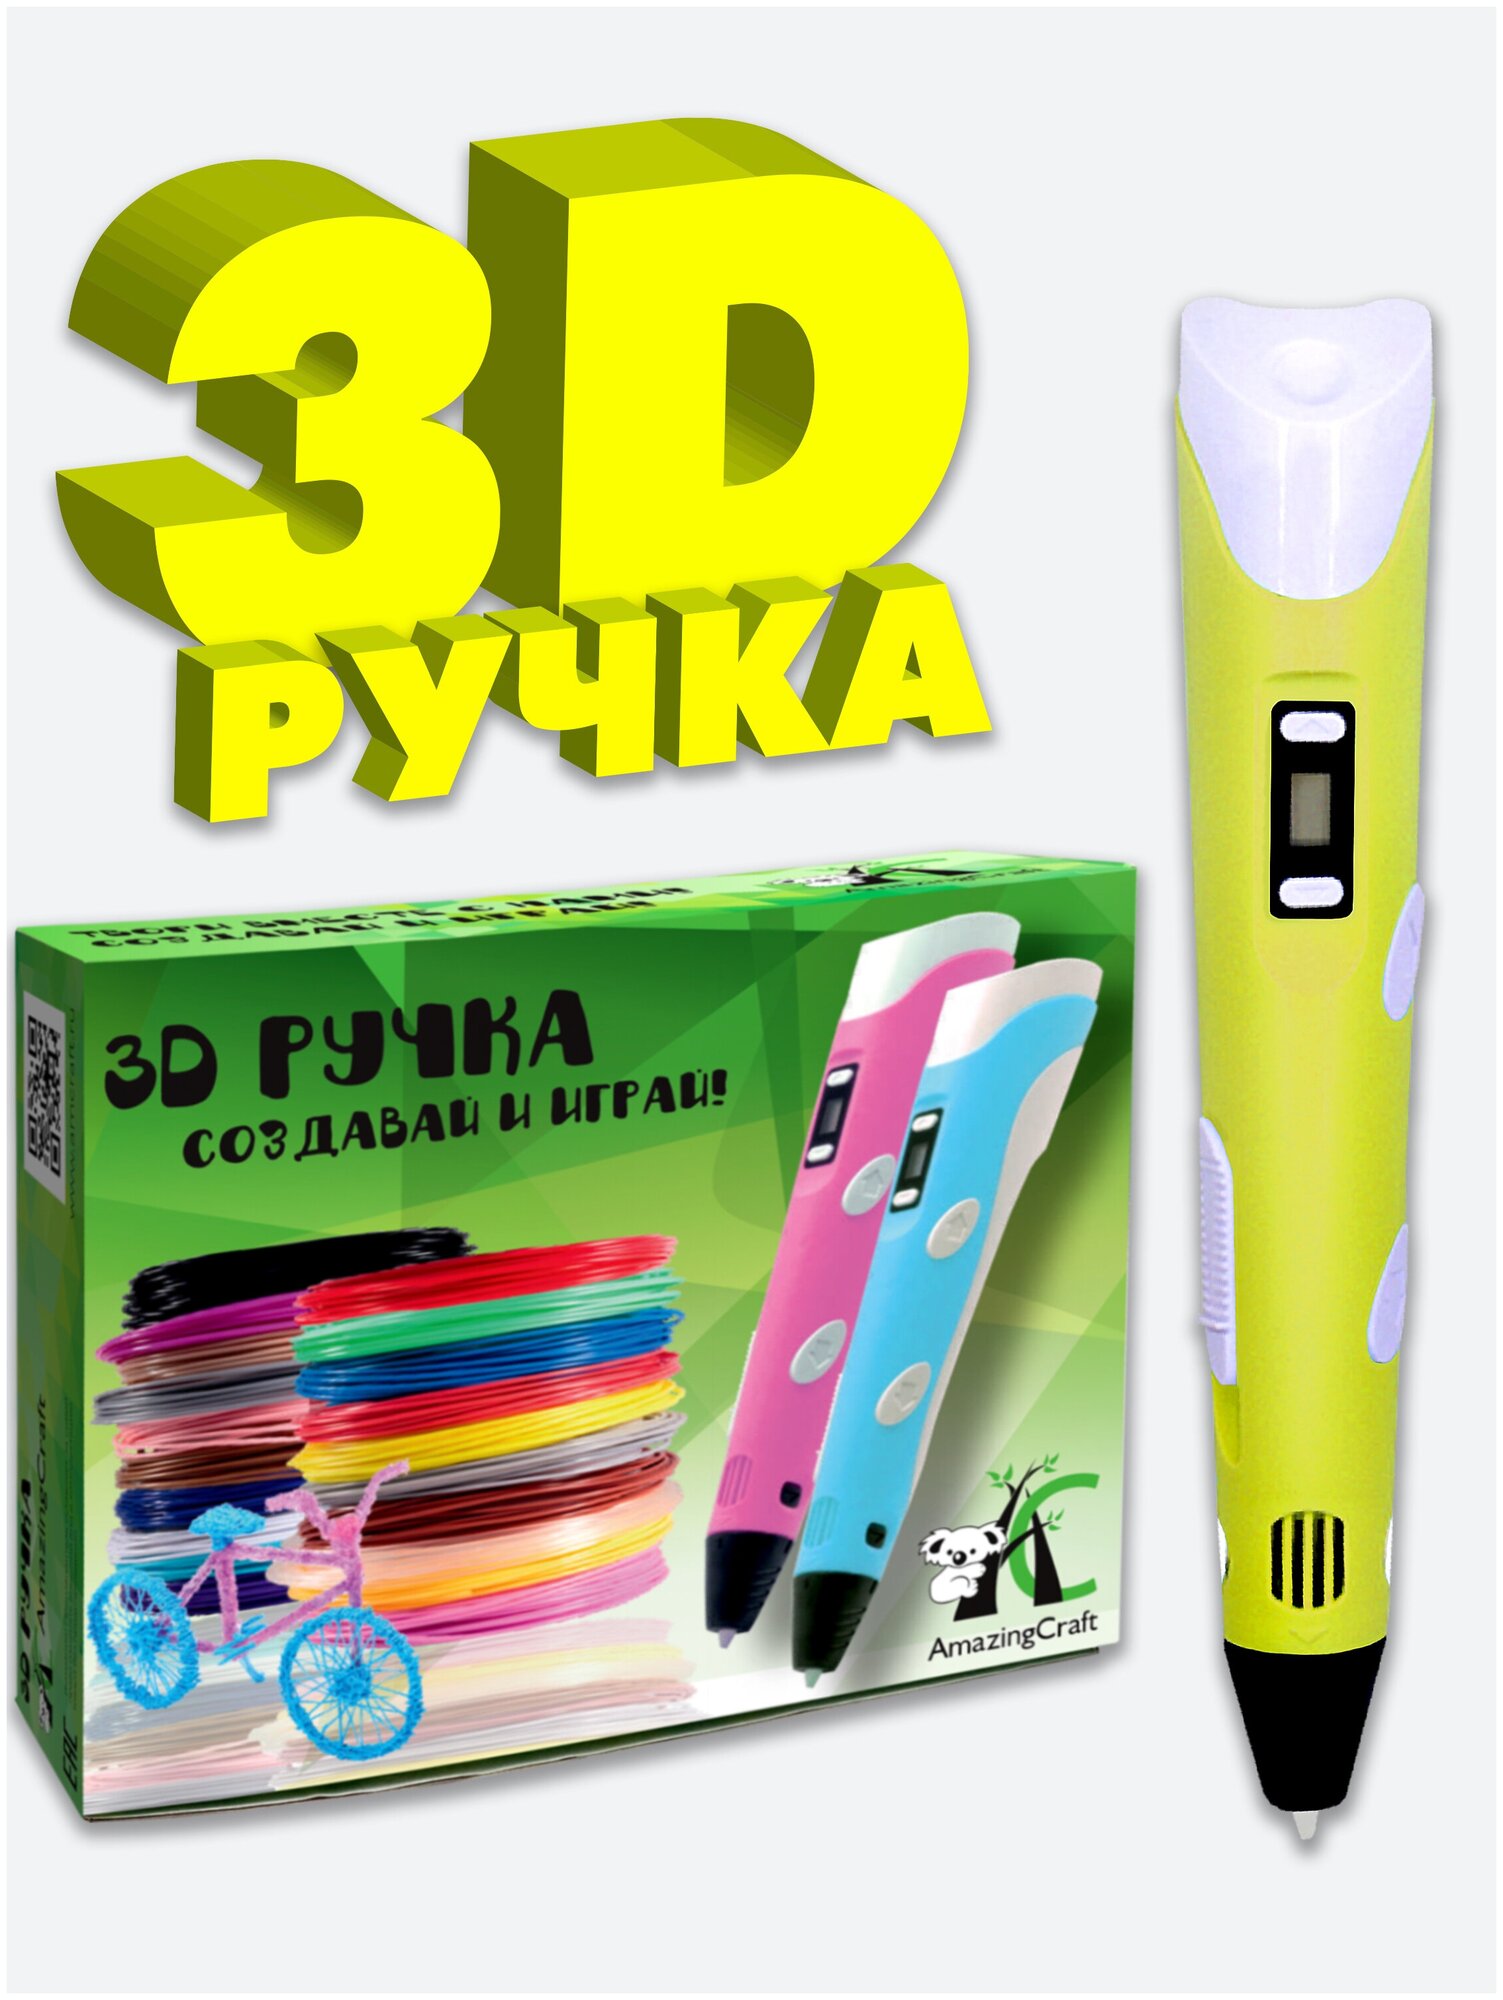 3Д ручка AmazingCraft, желтая, для ABS и PLA пластика, с дисплеем, регулировка температуры, 3D ручка для детей, зд ручка